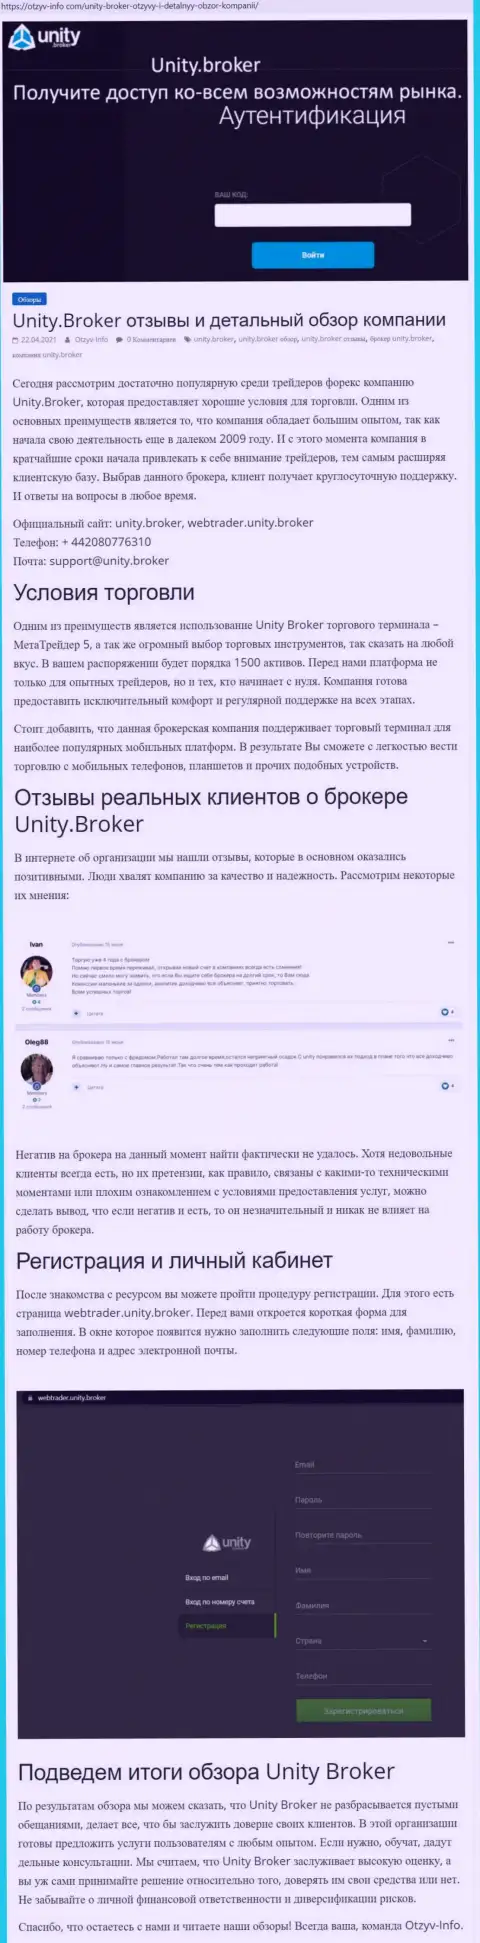 Обзор работы ФОРЕКС-брокерской компании Unity Broker на сервисе otzyv info com